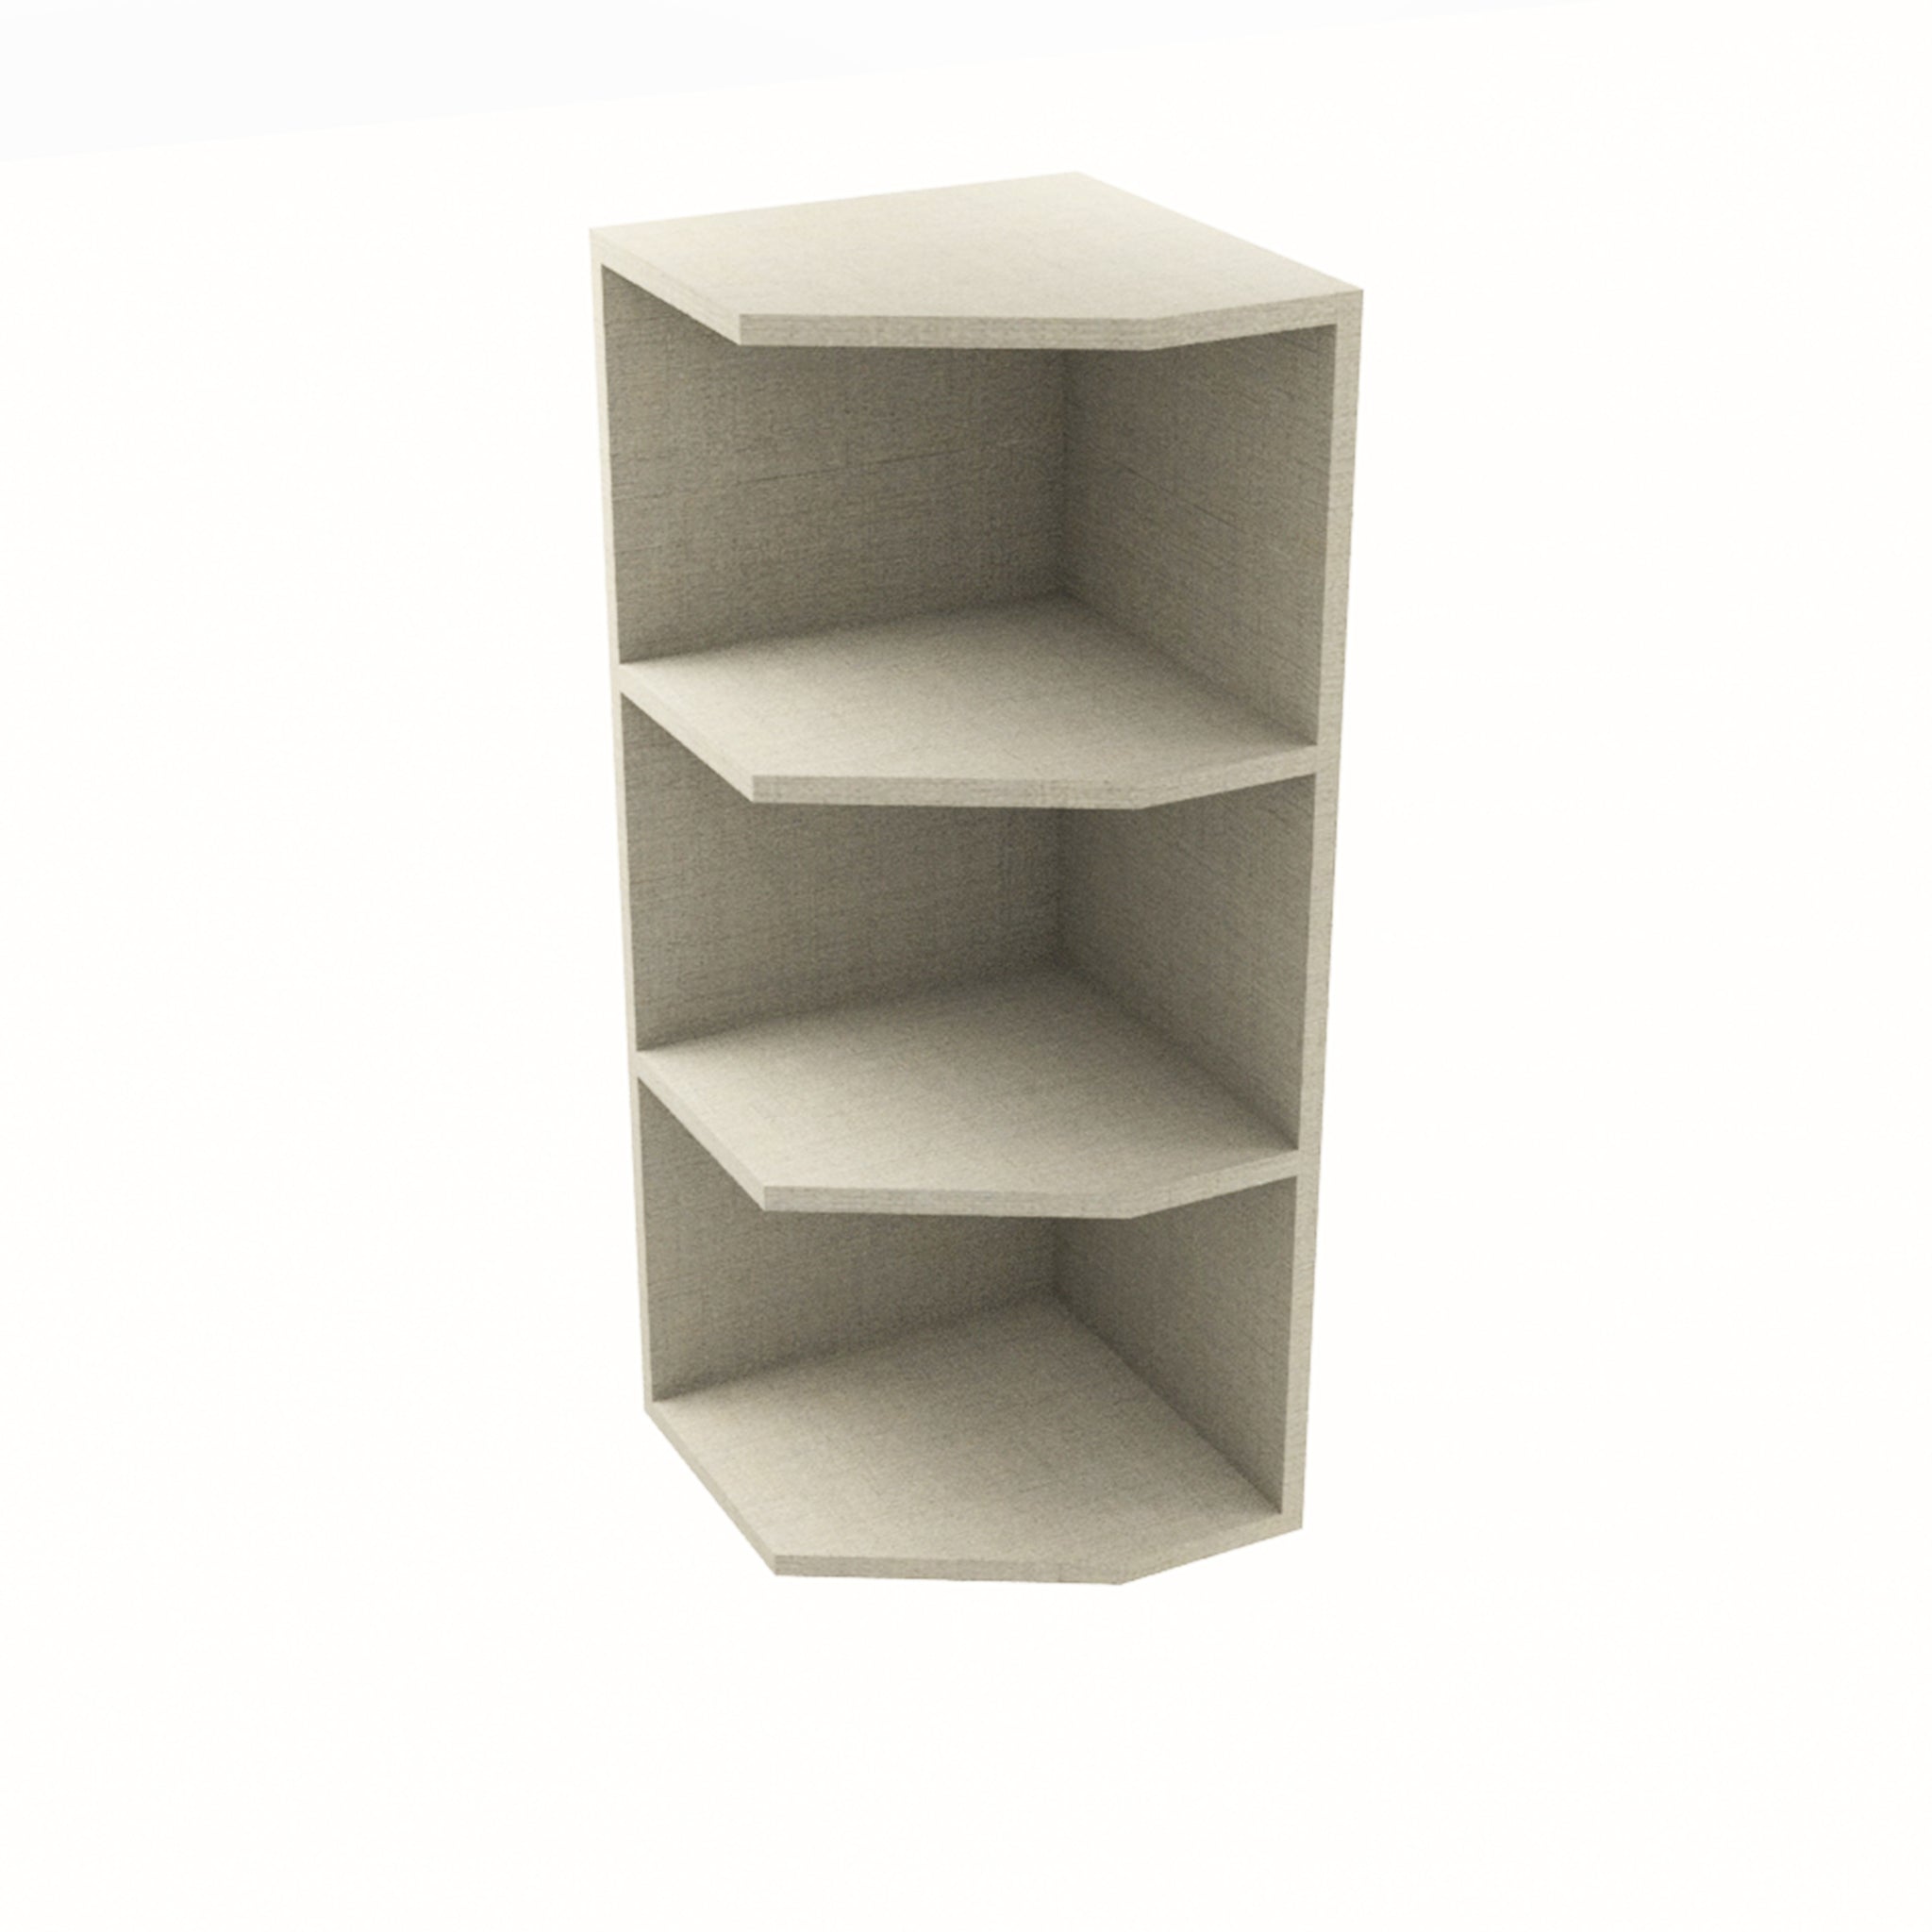 RTA - Fabric Grey - End Wall Shelf Base Cabinets | 12"W x 34.5"H x 12"D